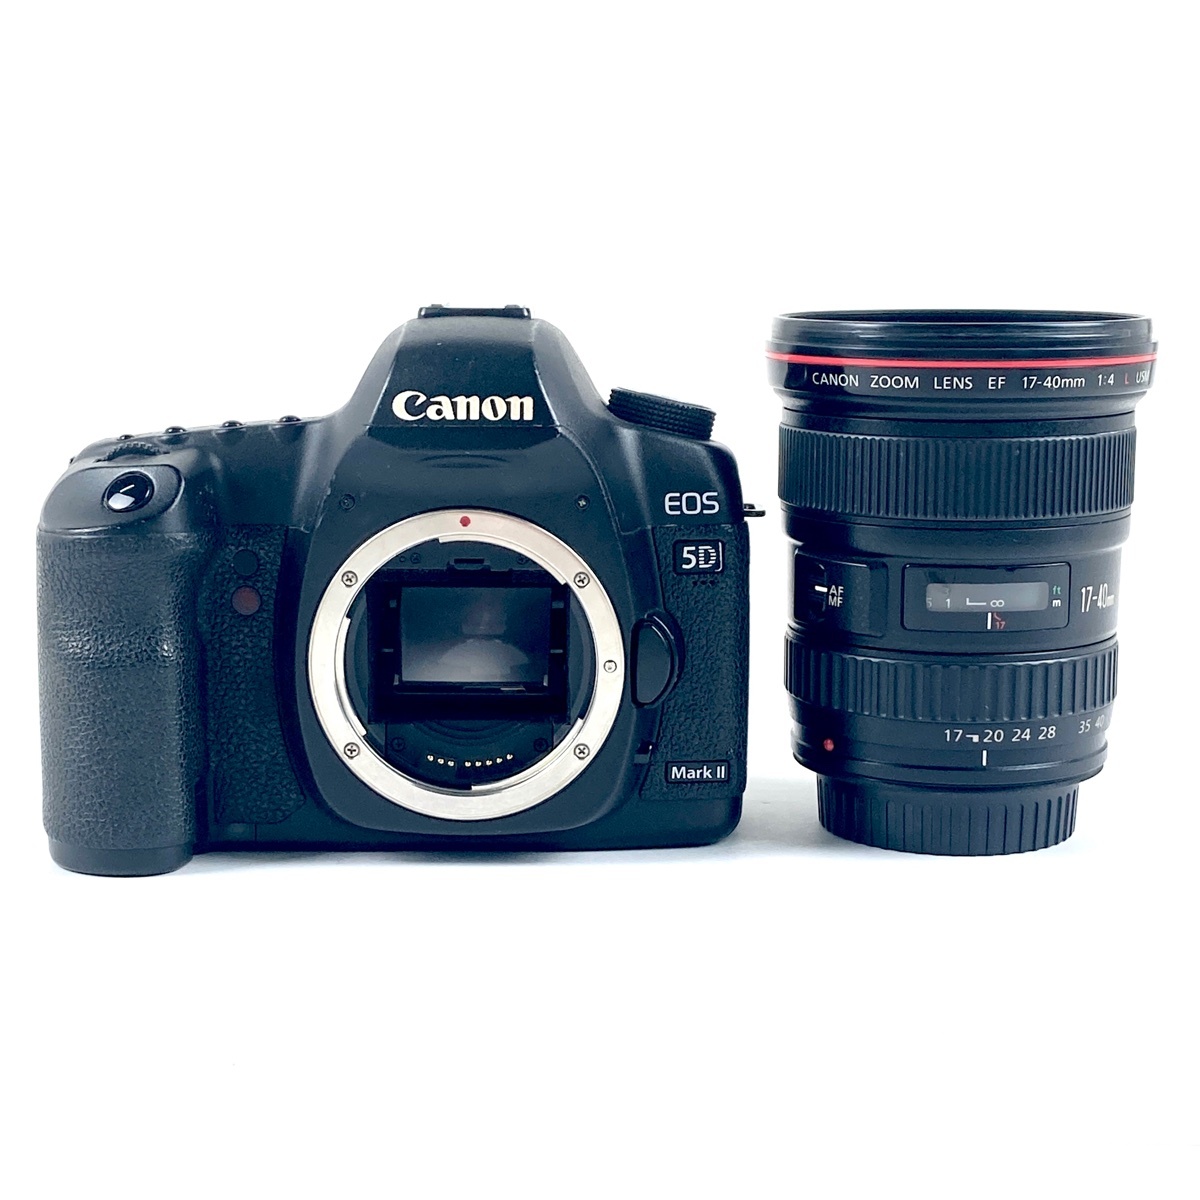 キヤノン Canon EOS 5D Mark II + EF 17-40mm F4L USM デジタル 一眼レフカメラ 【中古】の画像1